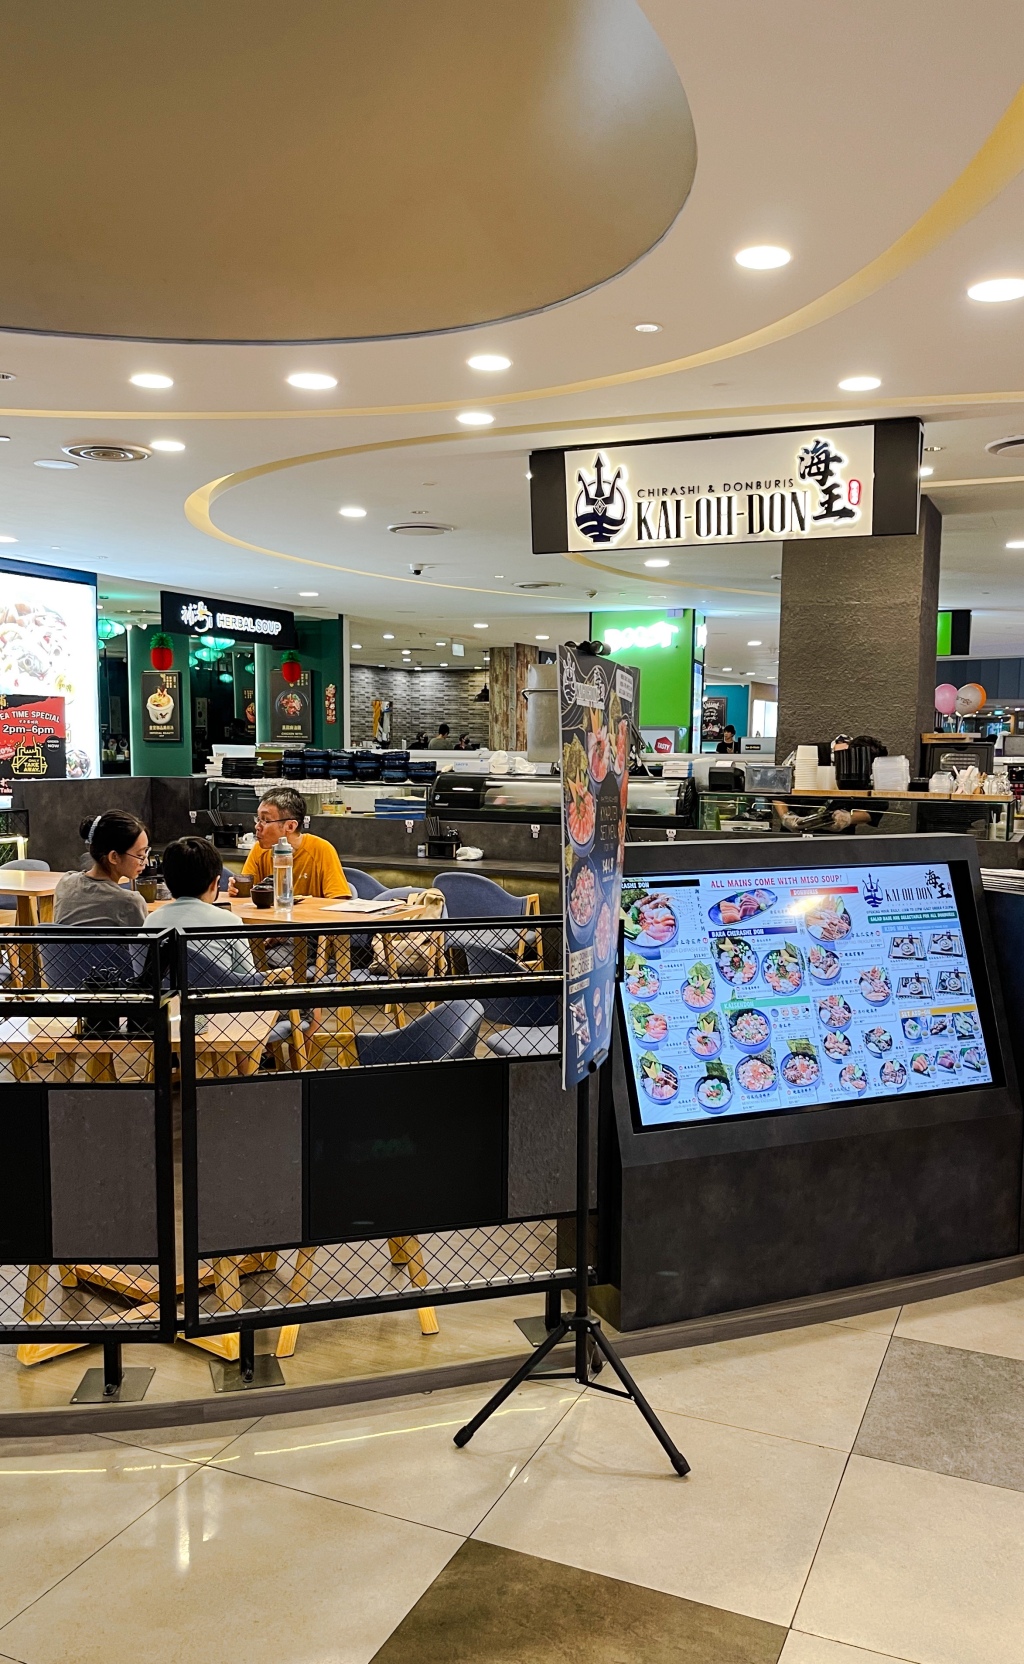 Kai-Oh-Don  — Alexandra Retail Centre